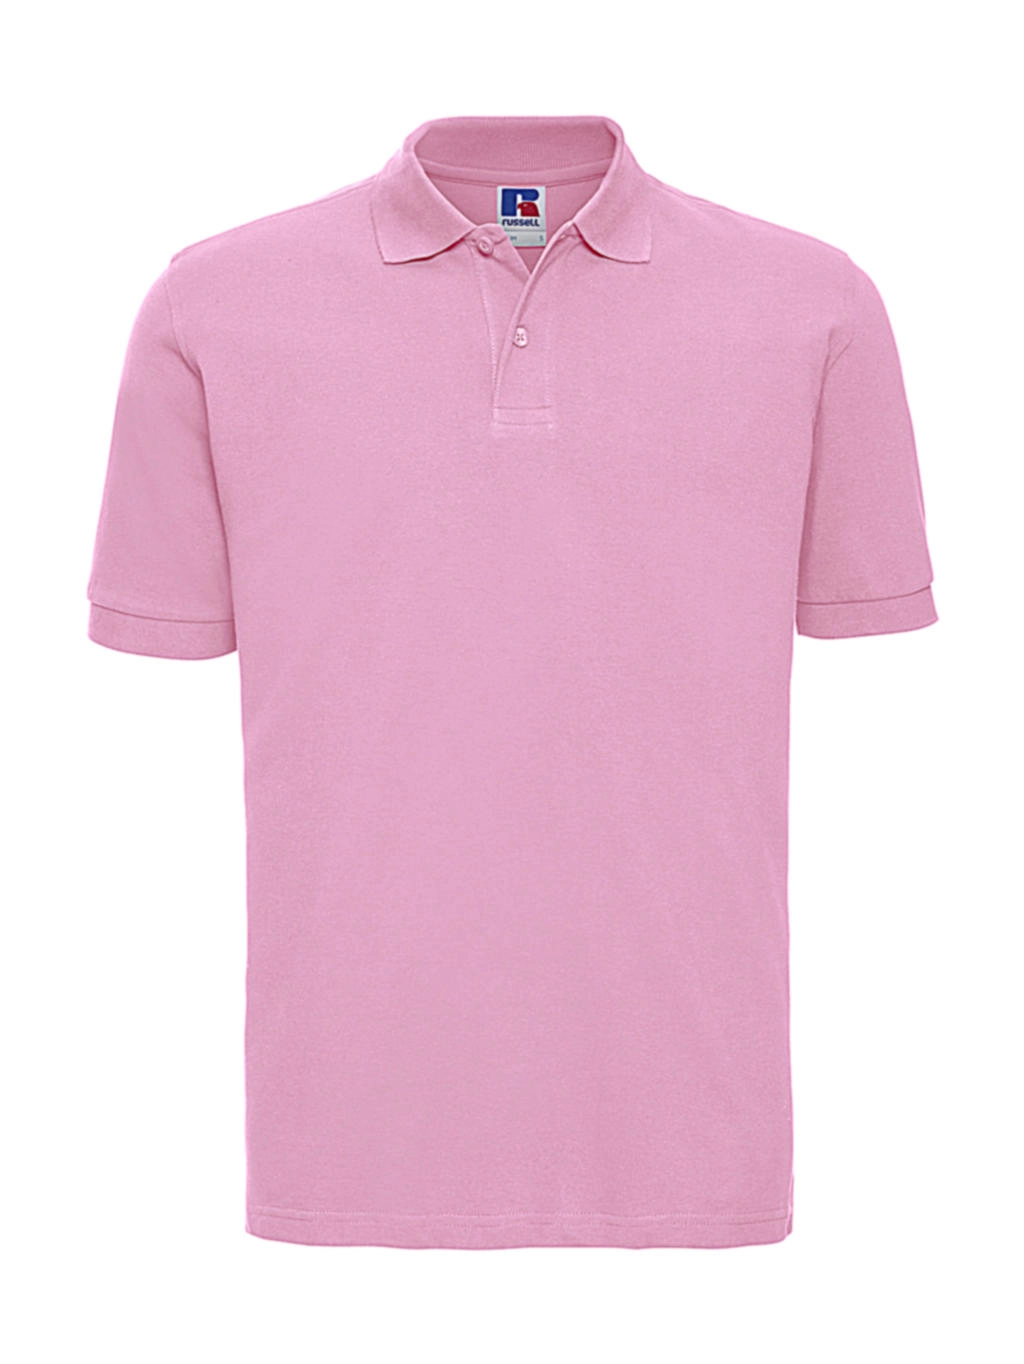 Men`s Classic Cotton Polo zum Besticken und Bedrucken in der Farbe Candy Pink mit Ihren Logo, Schriftzug oder Motiv.